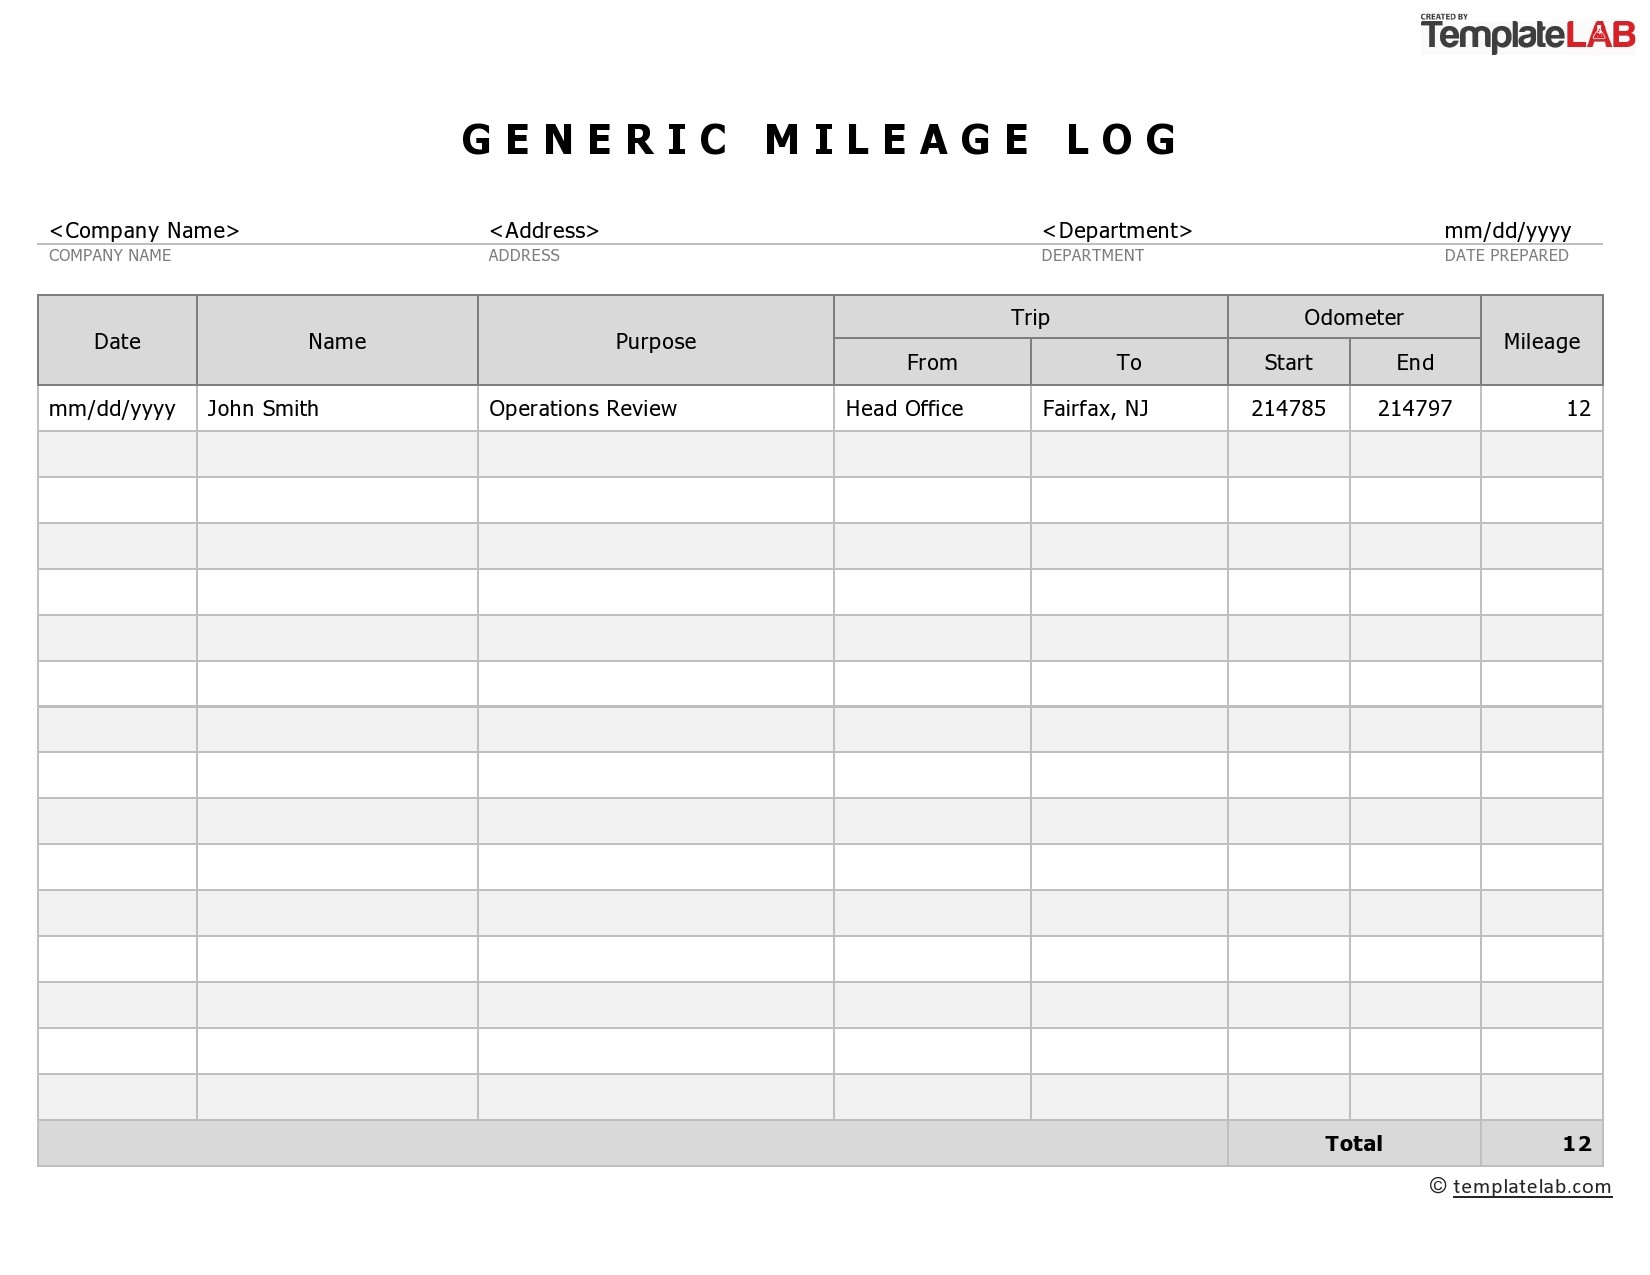 31 Printable Mileage Log Templates (Free) ᐅ TemplateLab